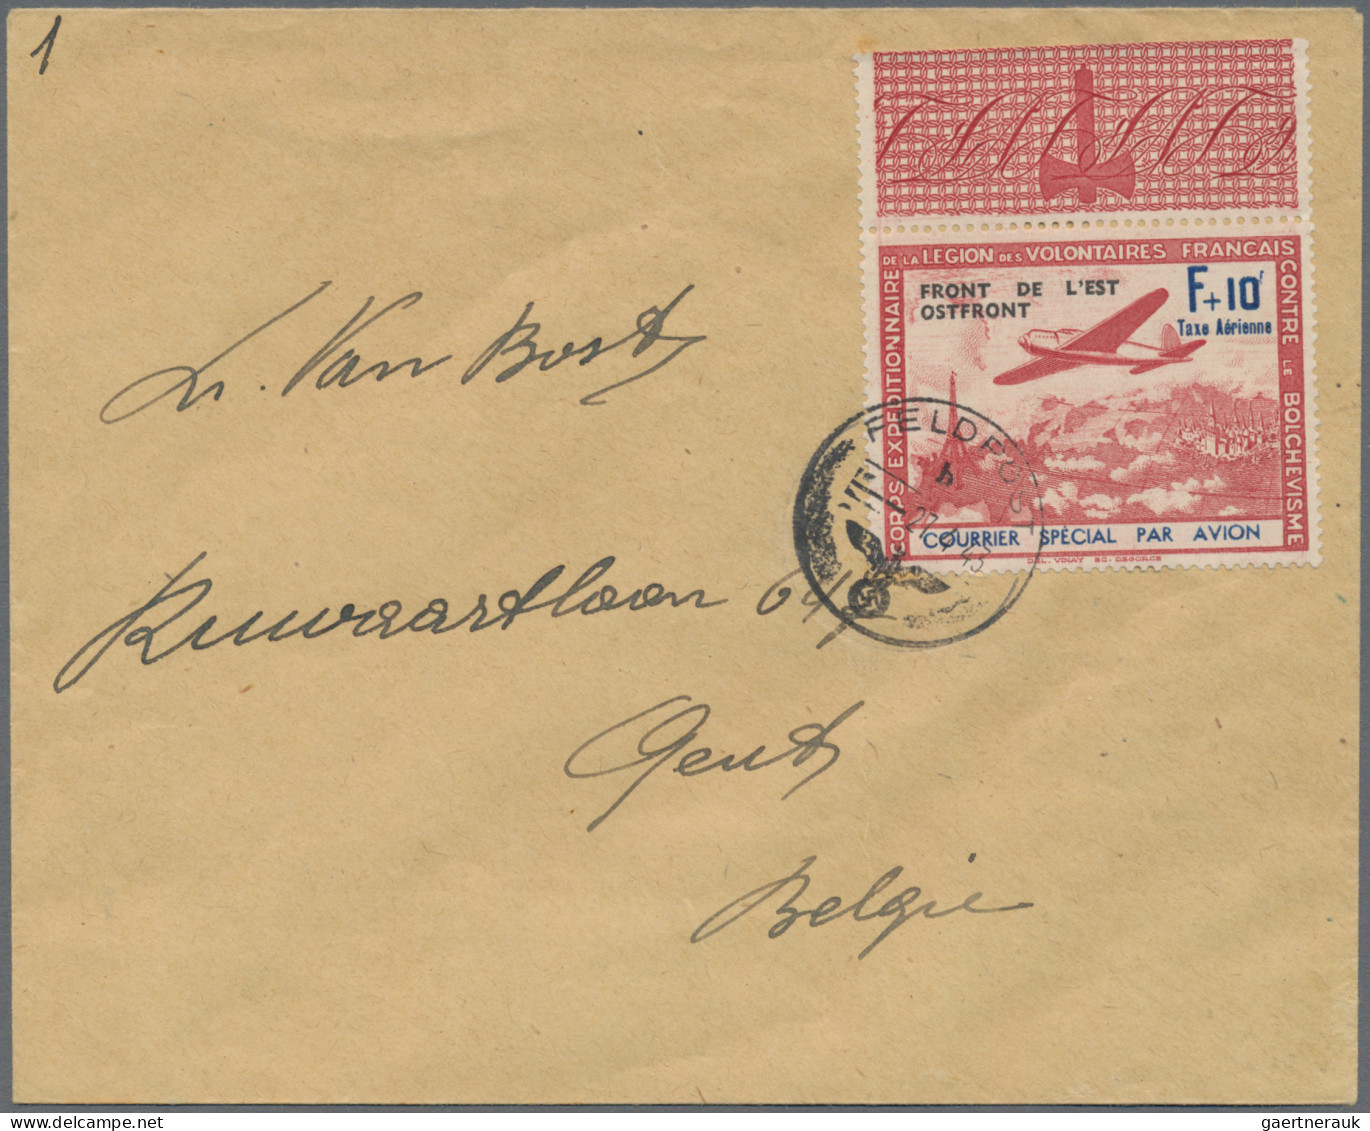 Nachlässe: 1901 - 1943, Kleiner Posten von 6 Briefen und einer Karte, dabei offi